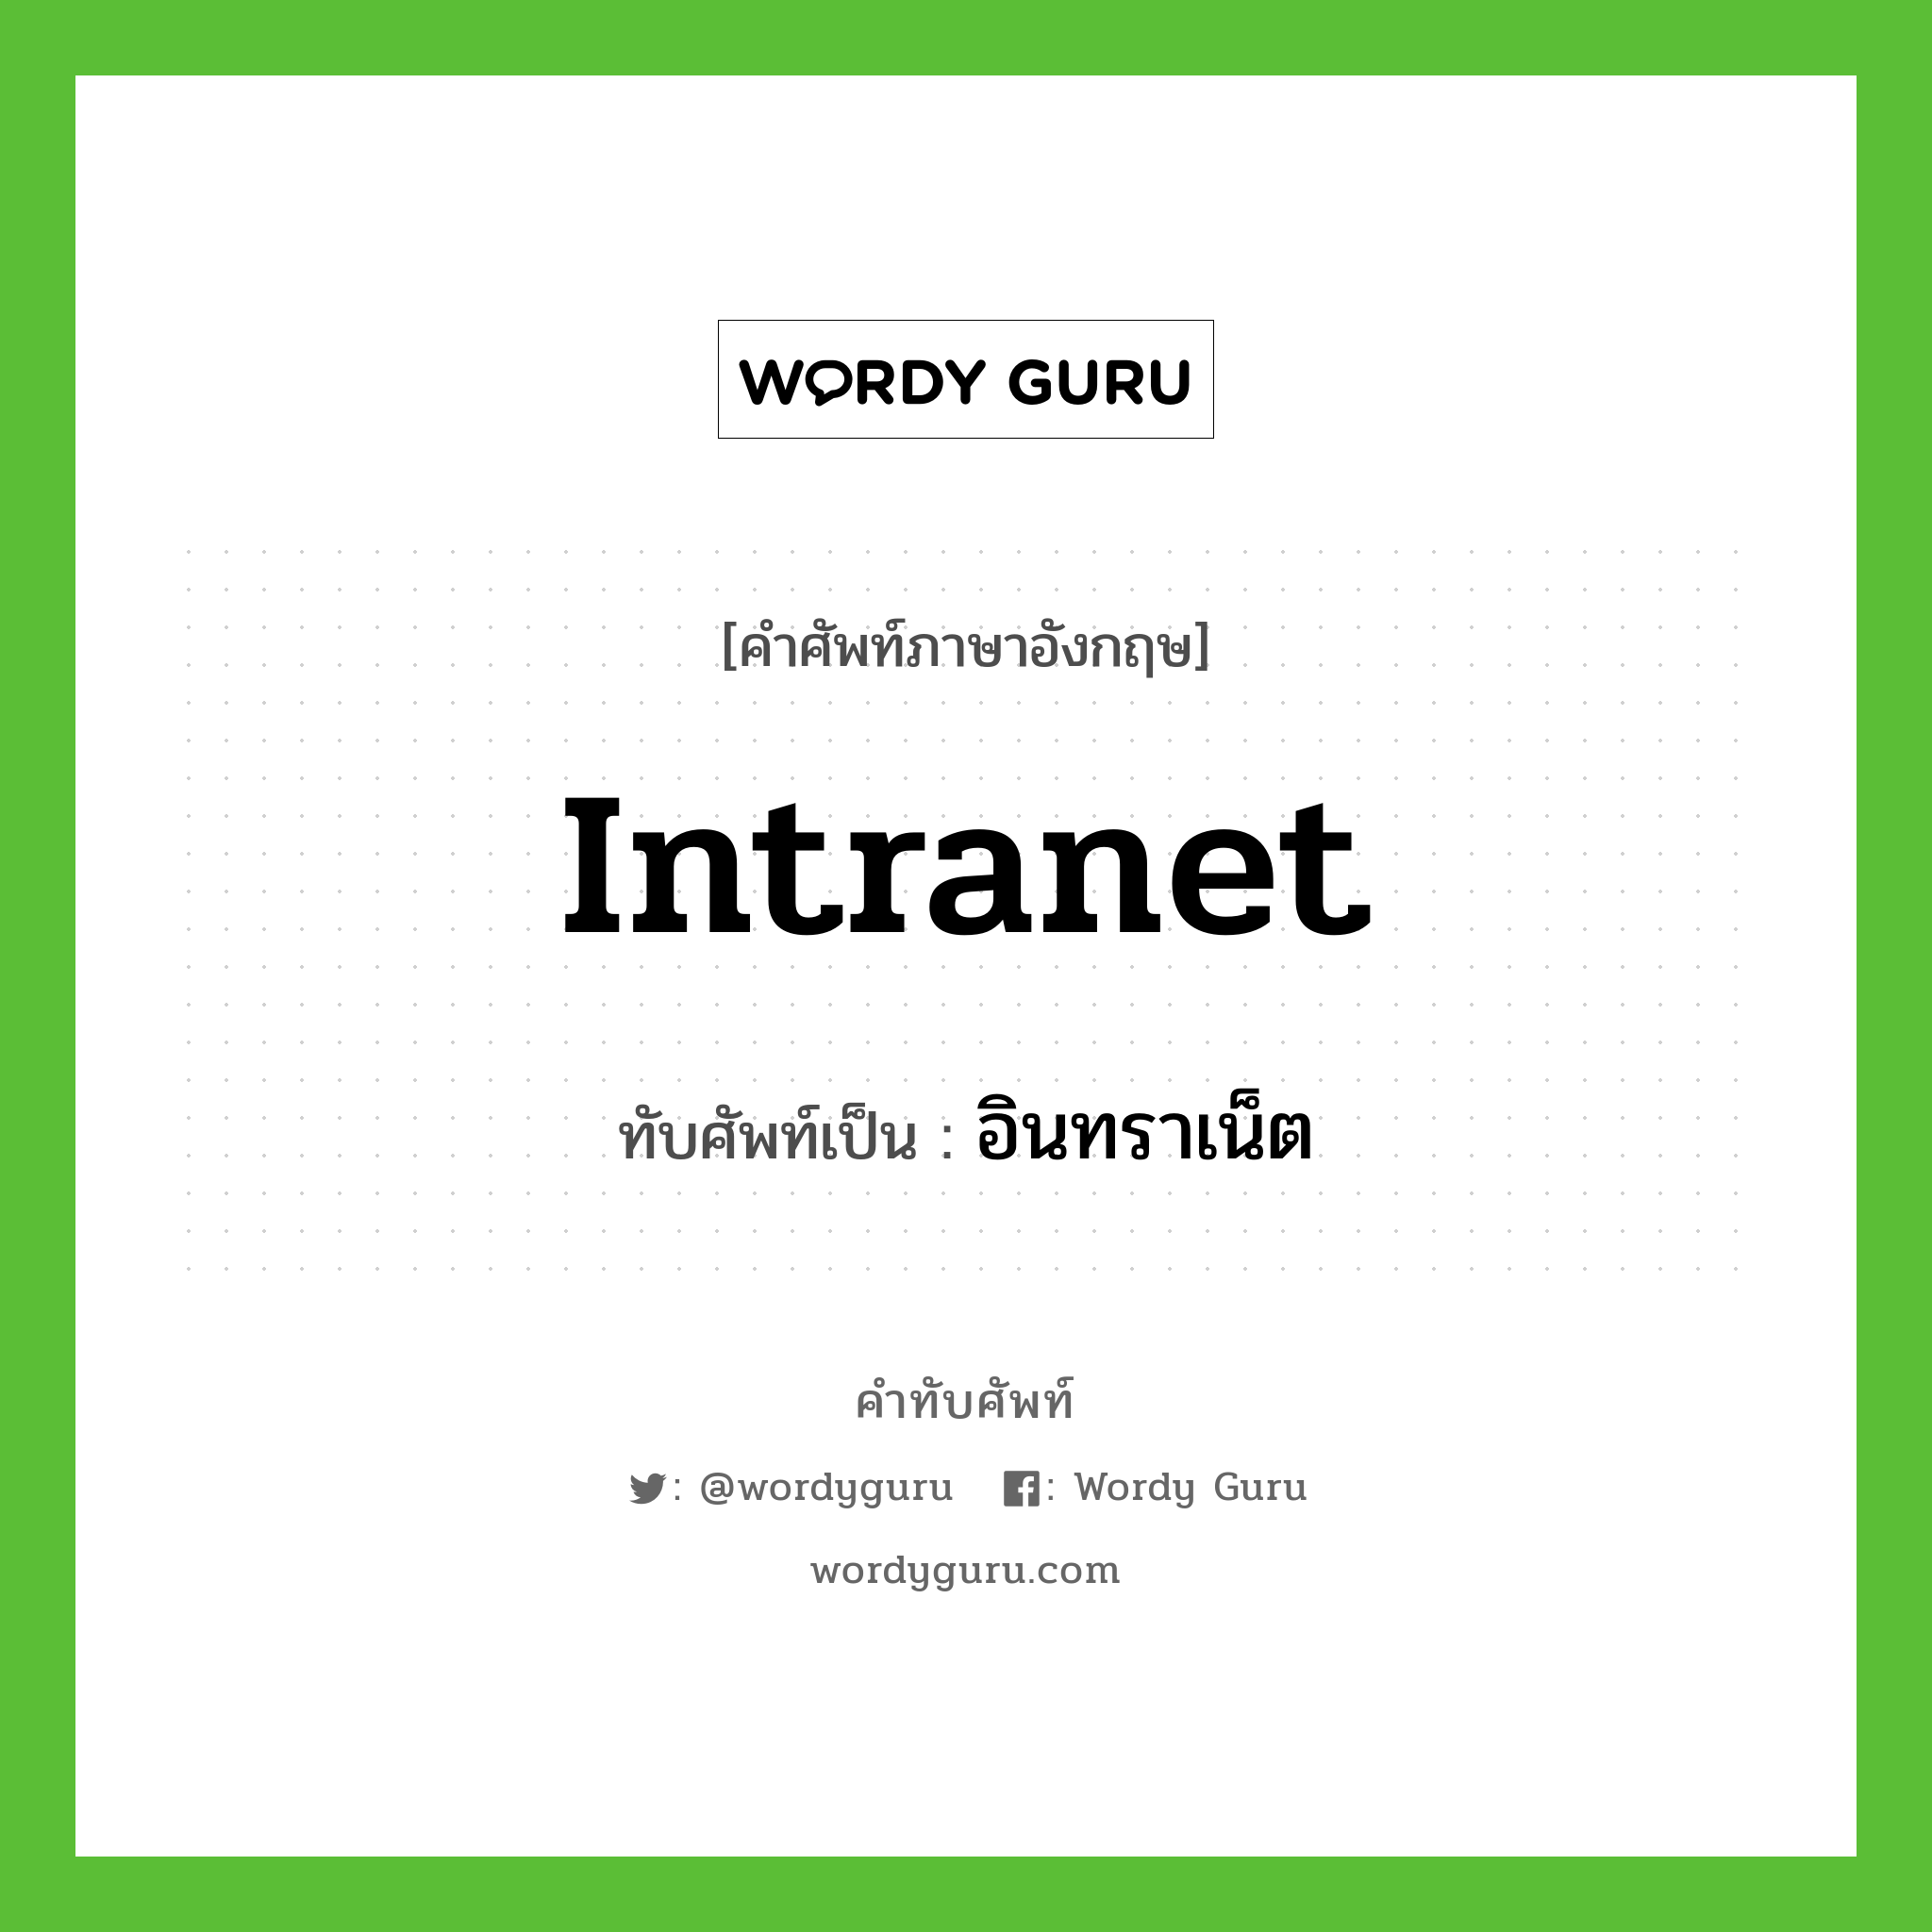 intranet เขียนเป็นคำไทยว่าอะไร?, คำศัพท์ภาษาอังกฤษ intranet ทับศัพท์เป็น อินทราเน็ต